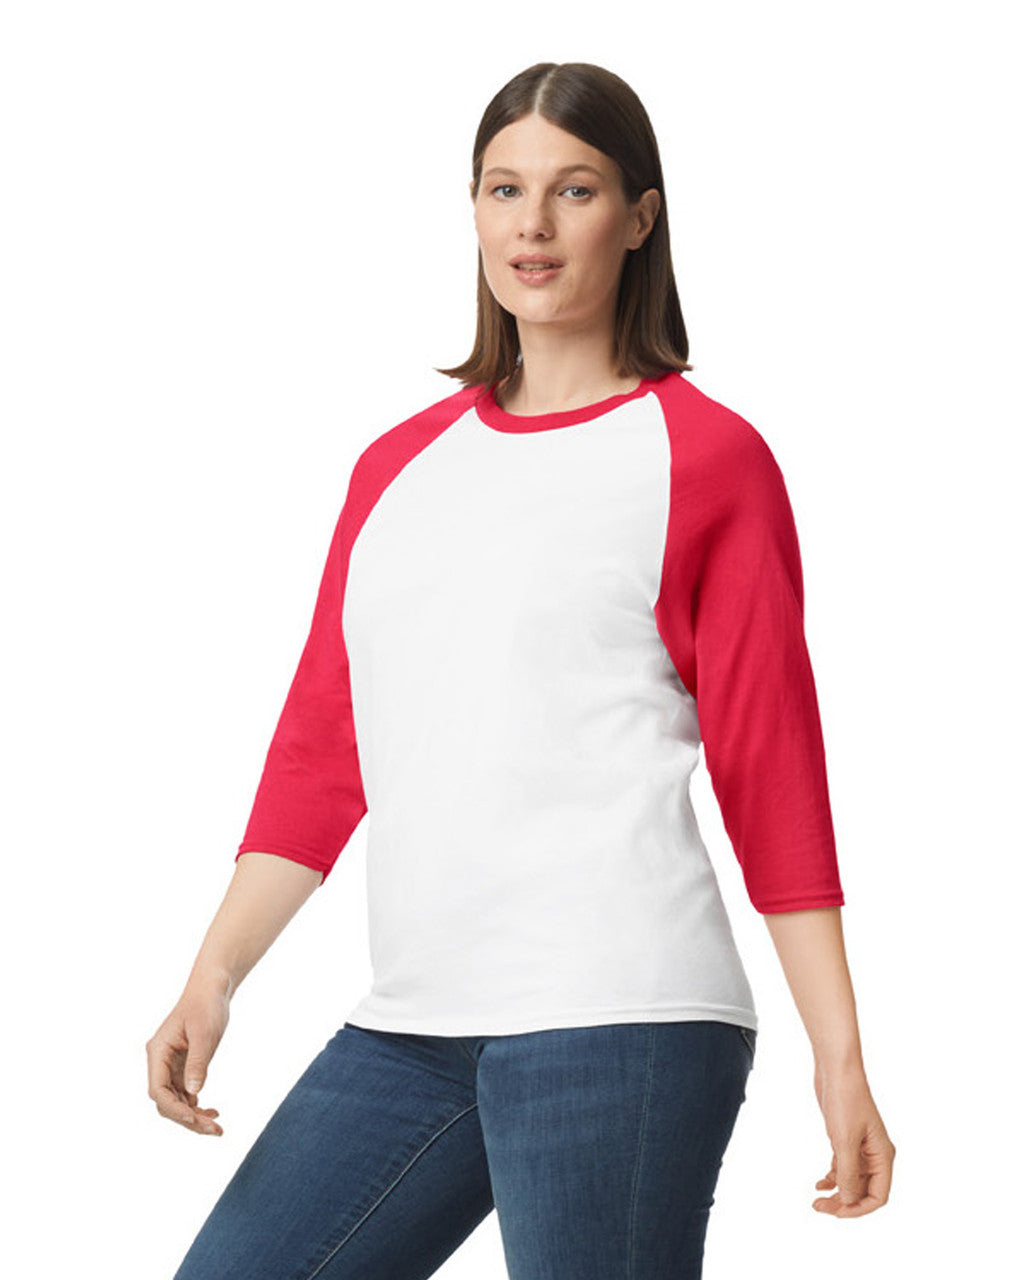 Camiseta raglan 3/4 Blanco manga roja Gildan Ref. 5700